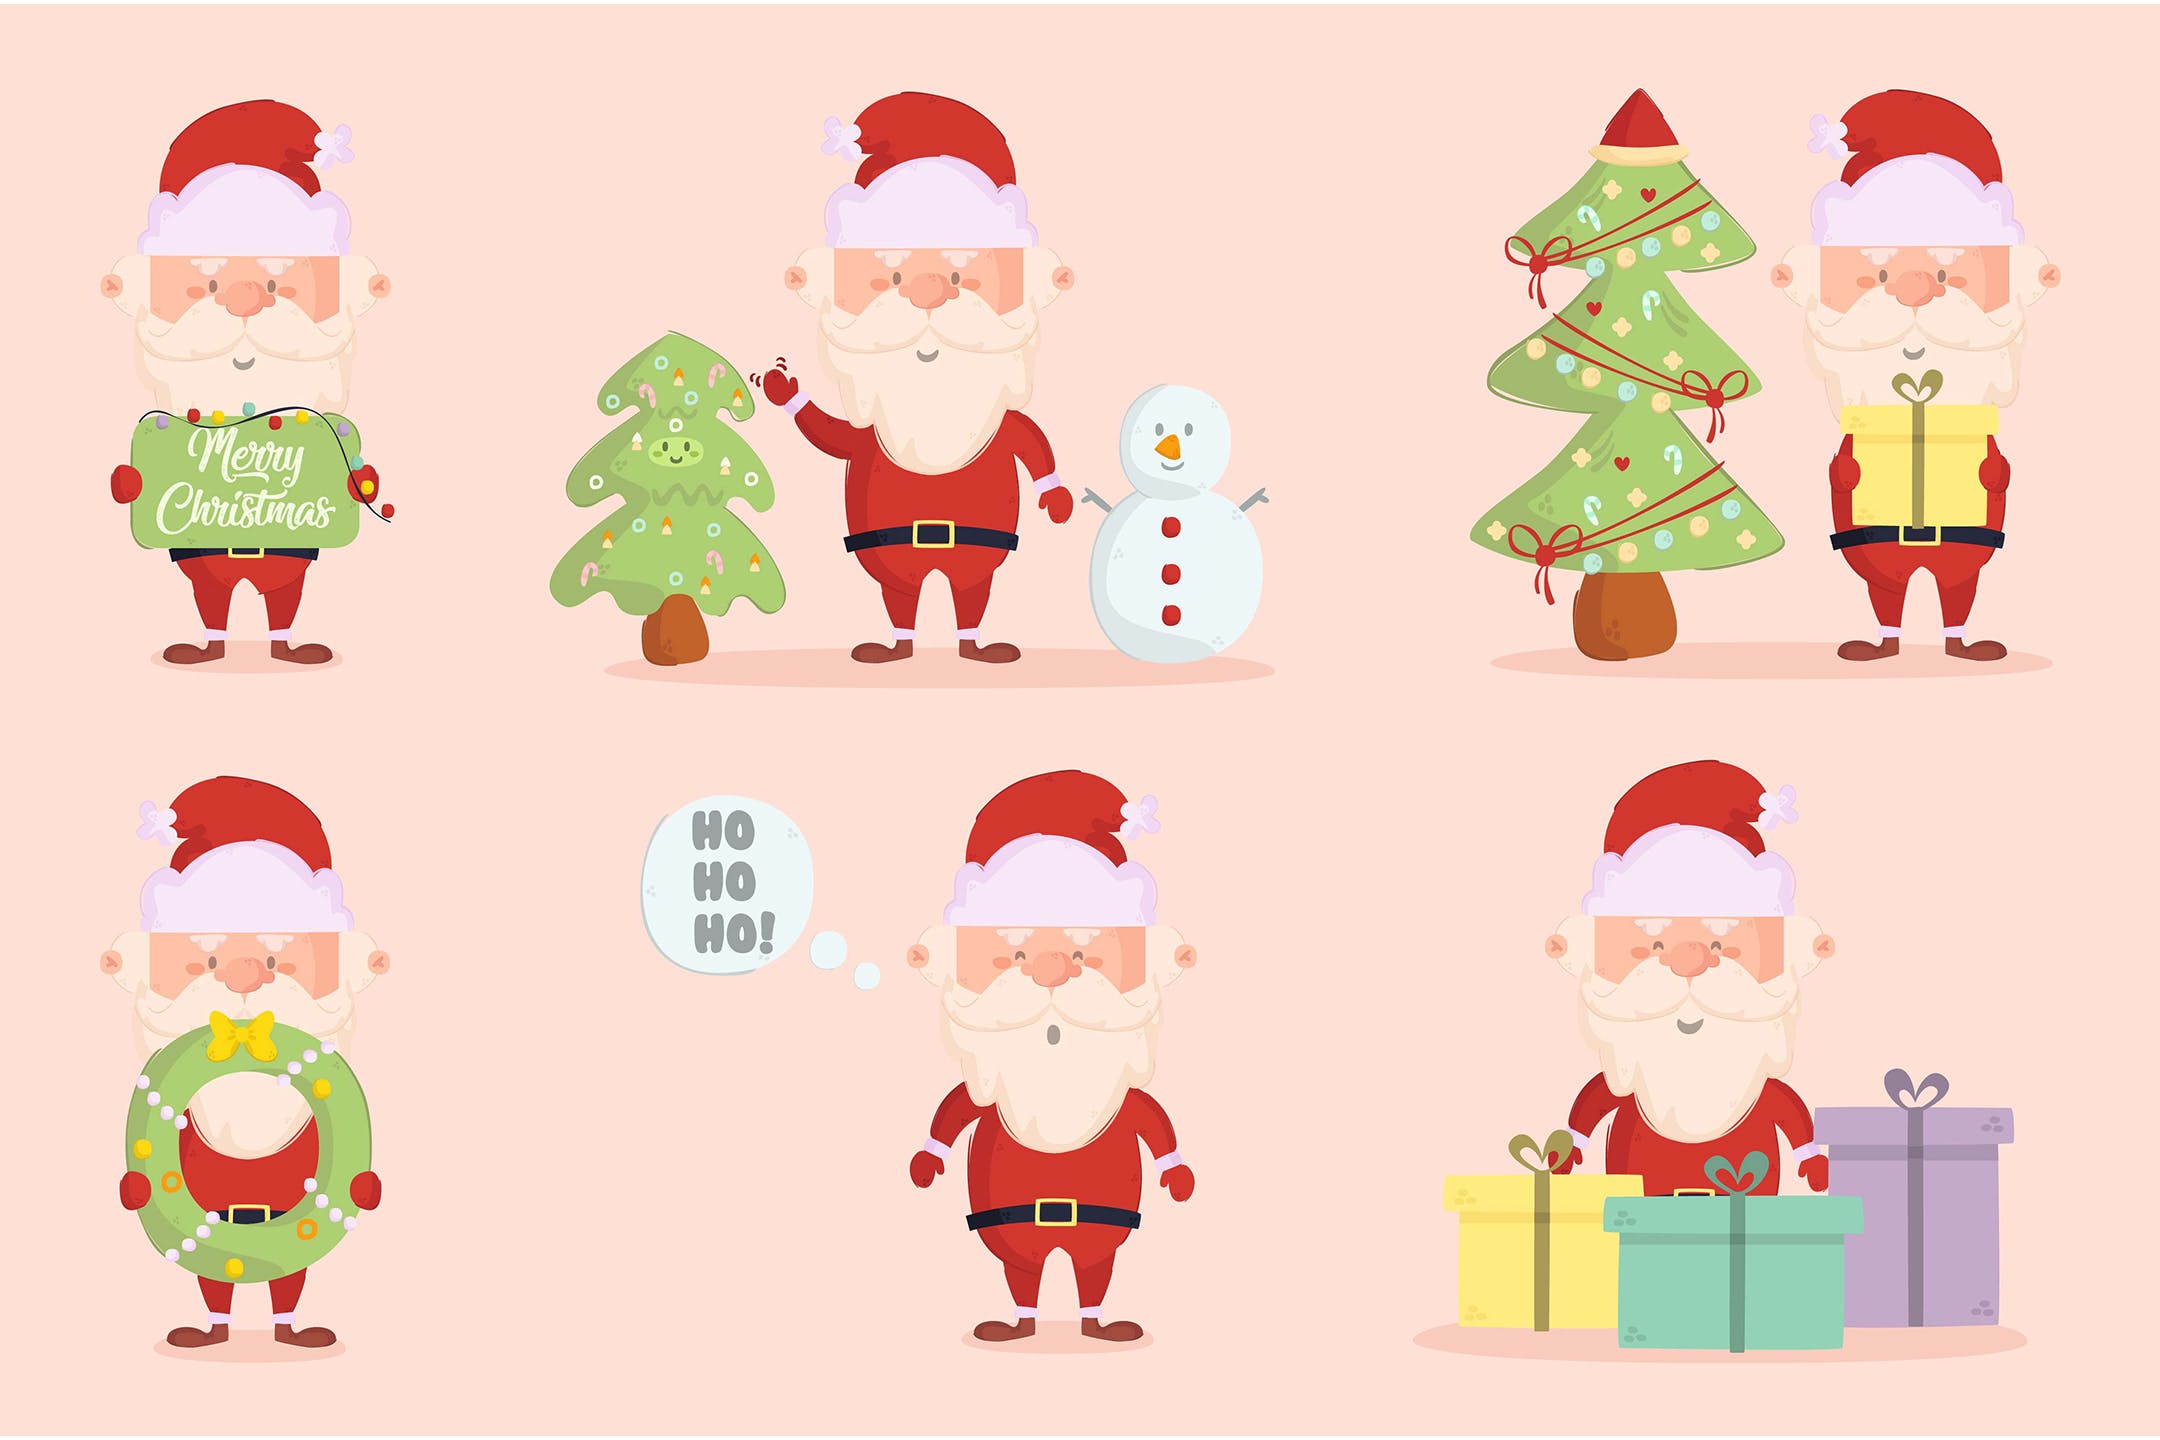 精品圣诞老人卡通人物AI,EPS,JPG源文件,编号:82623770